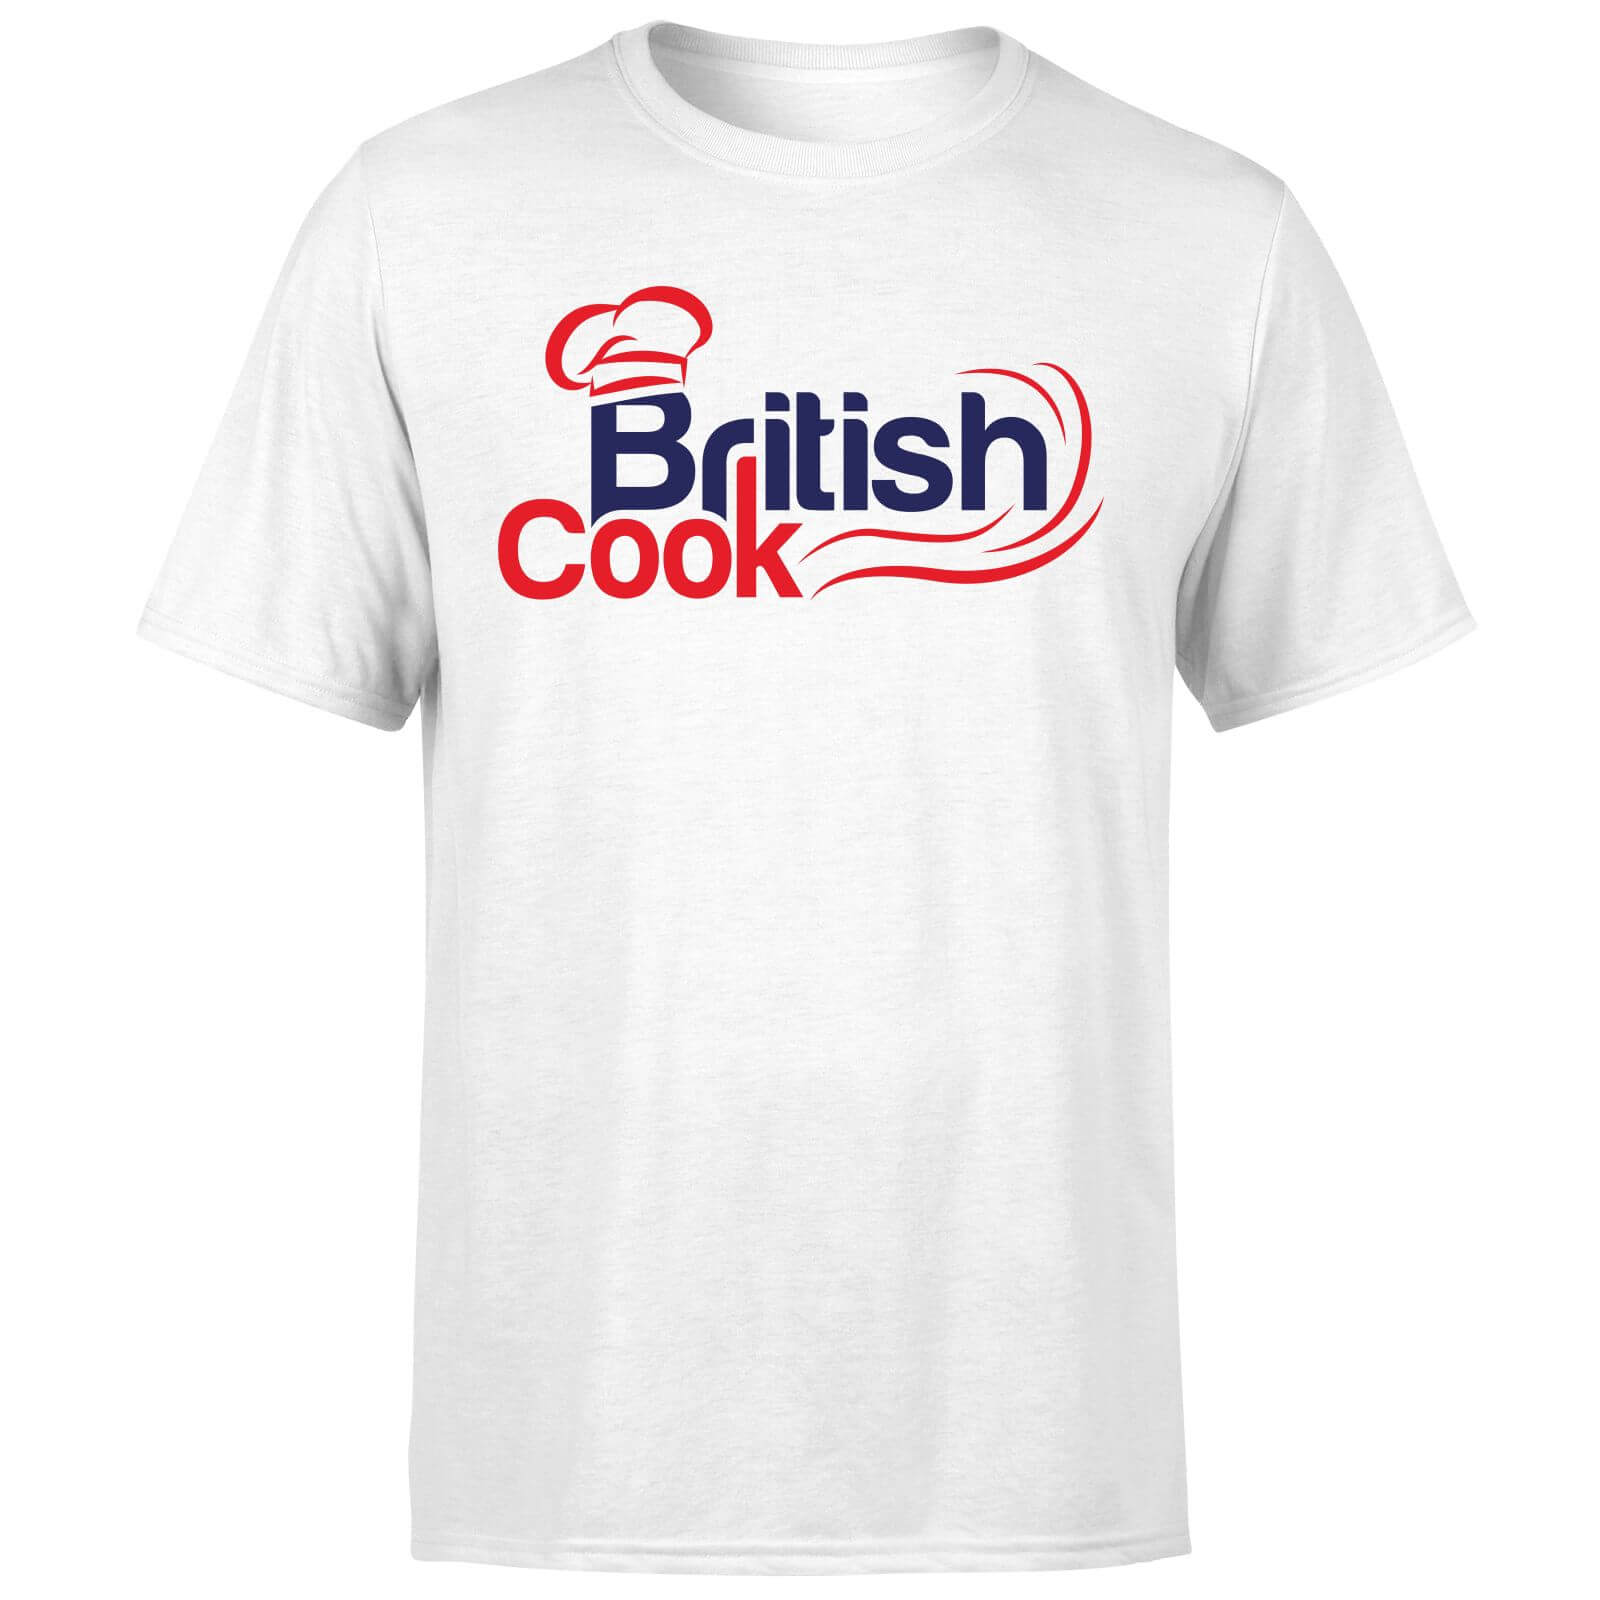 British Cook Red Mens T Shirt White S White